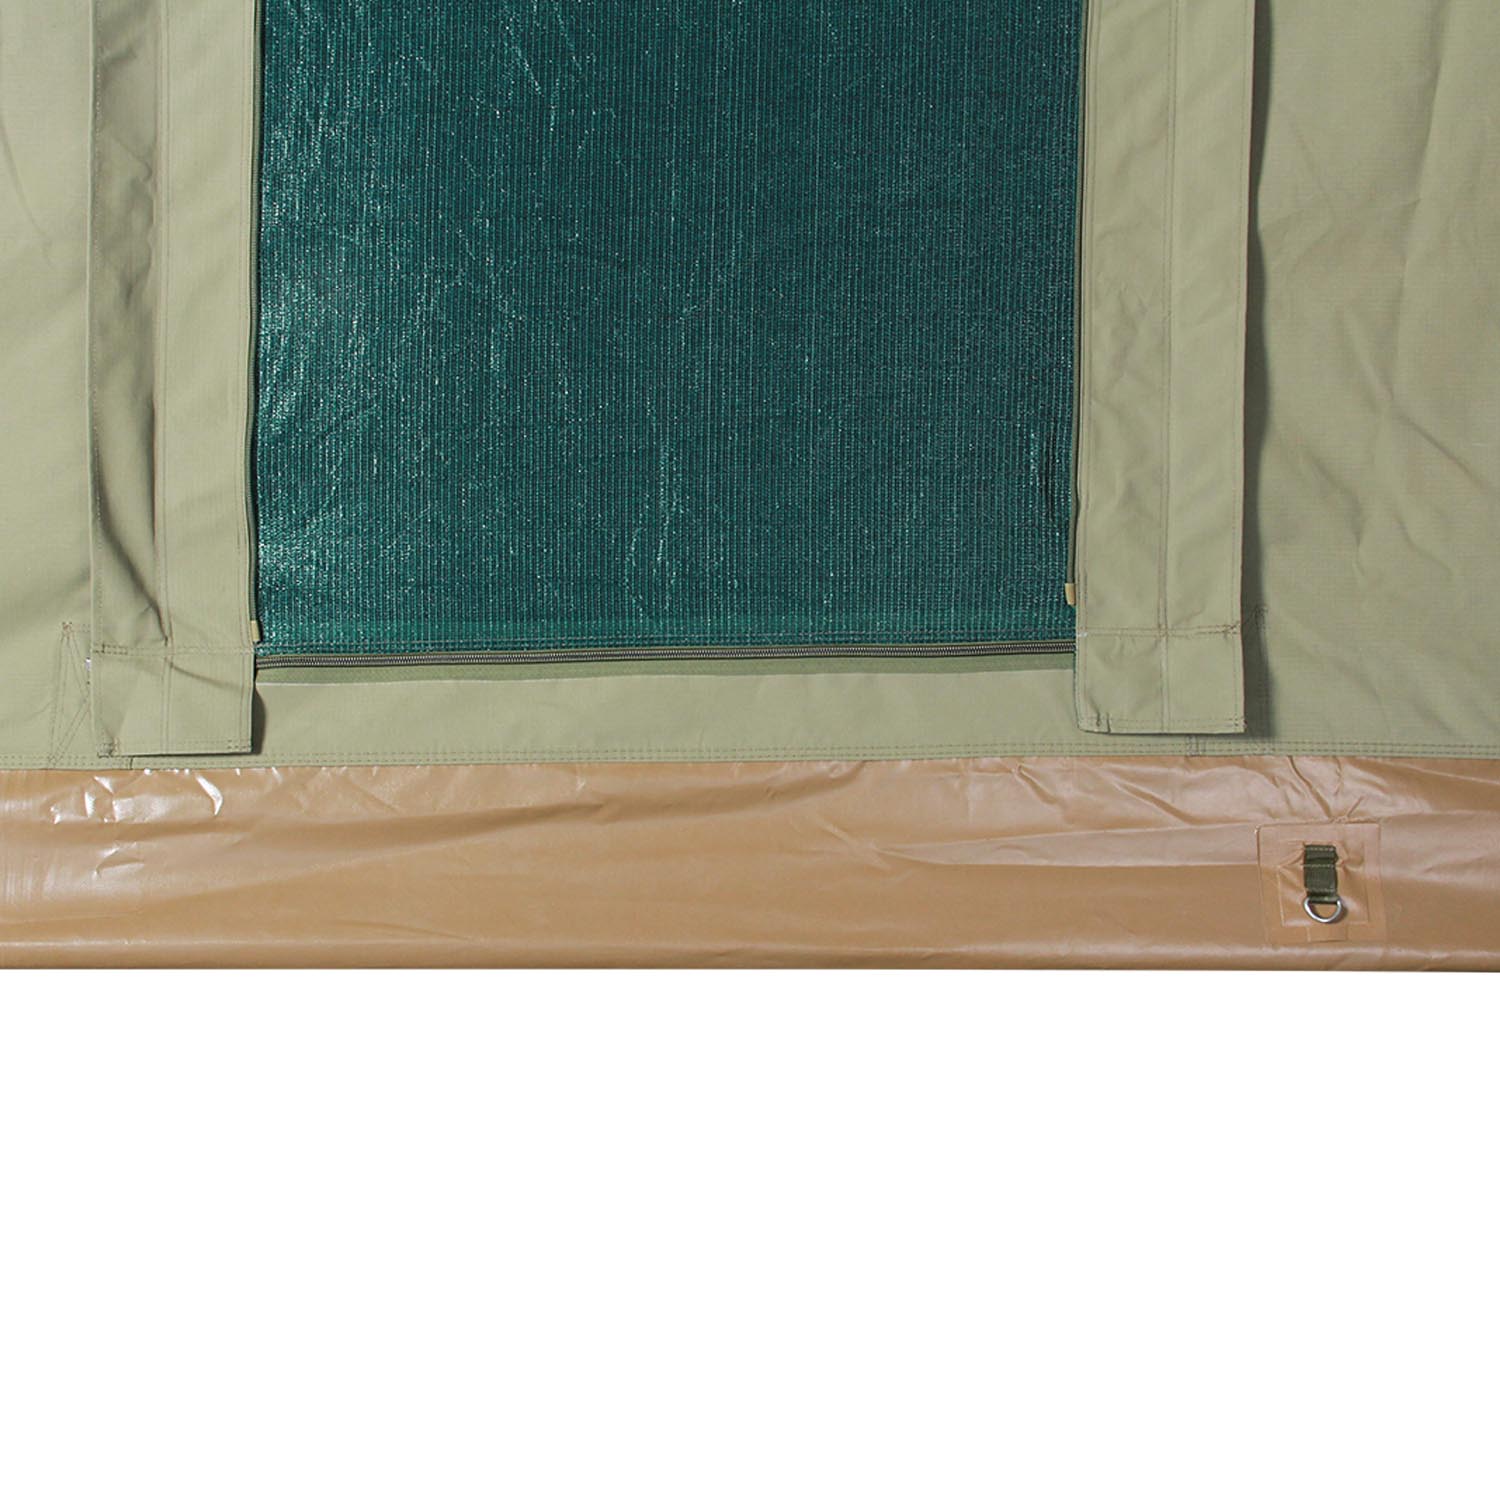 Mosquito net and PVC floor